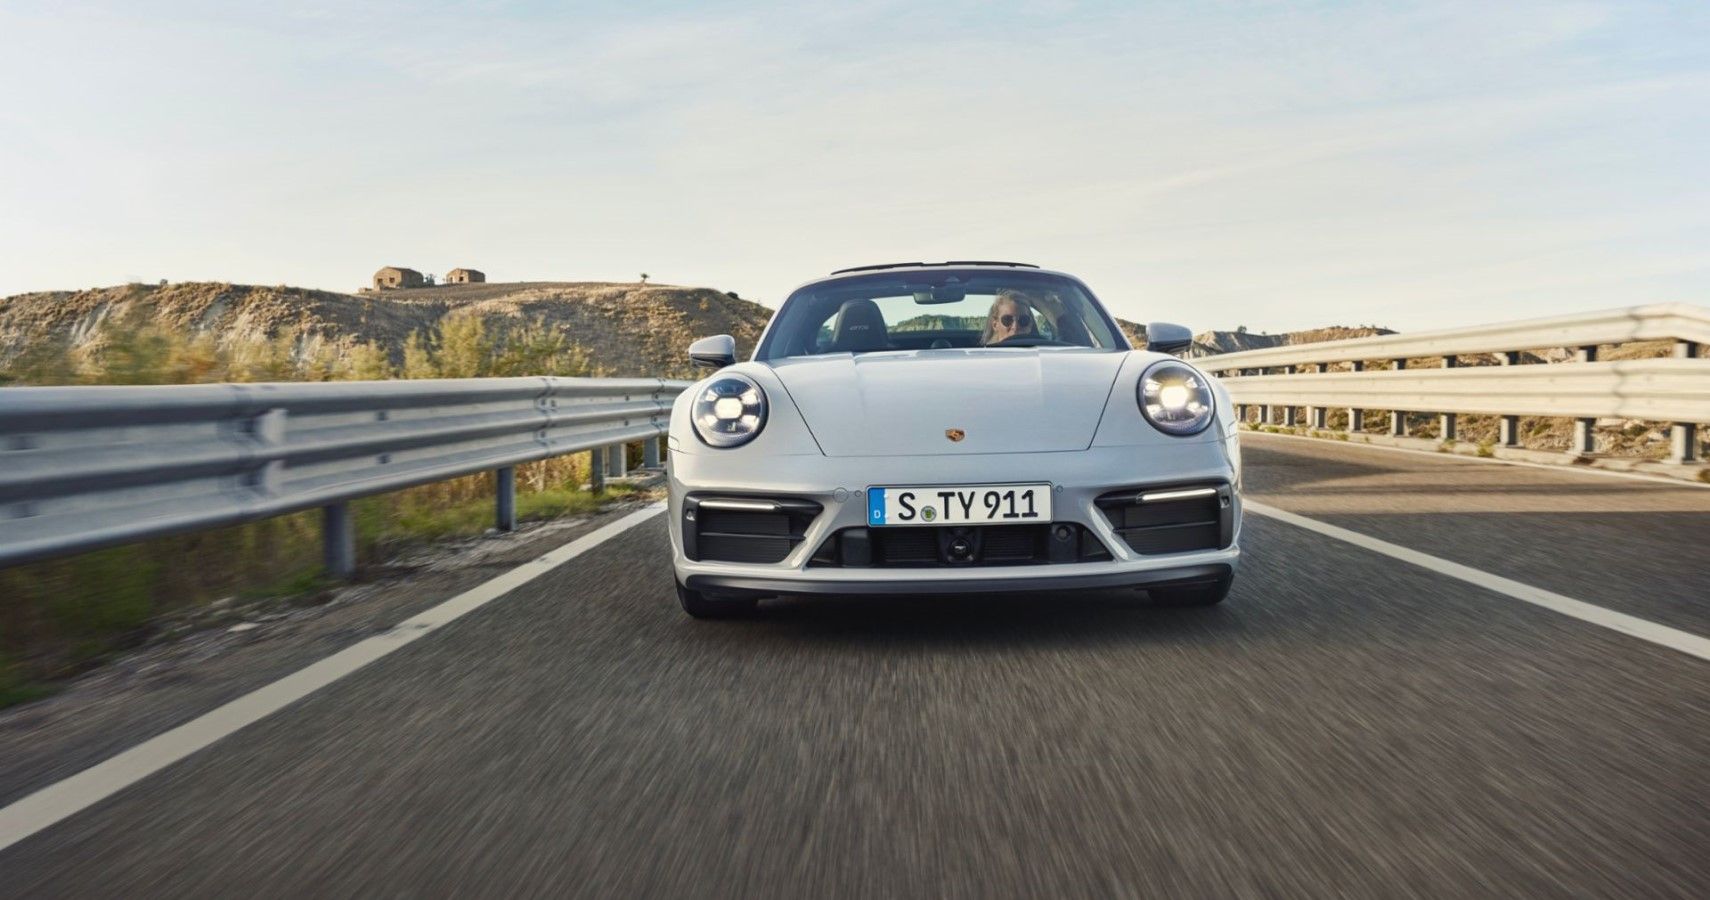 New lightweight sports car: Porsche 911 Carrera T - Porsche Newsroom